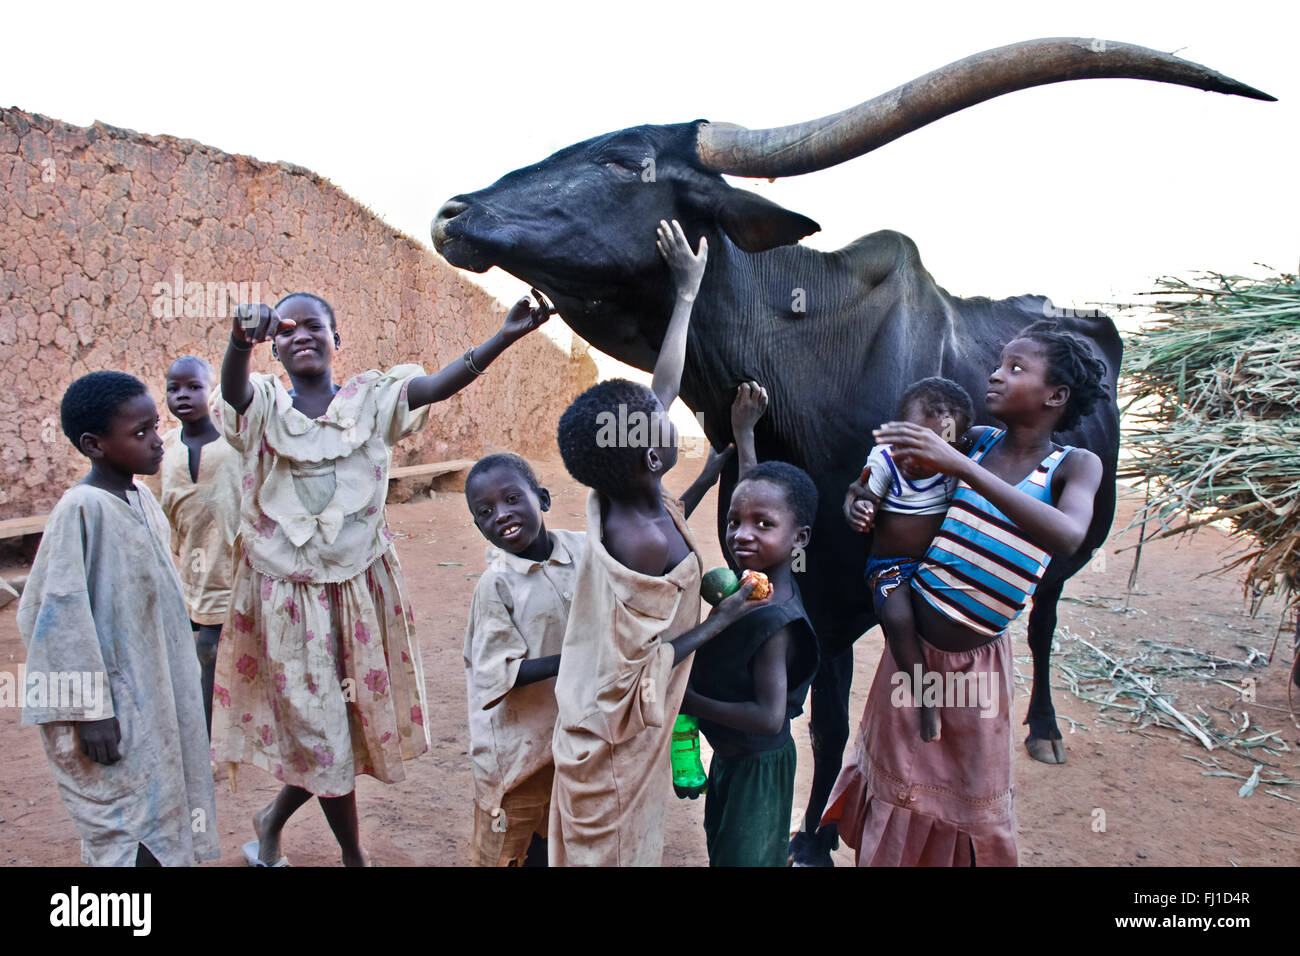 Kinder spielen mit großen schwarzen Stier in den Straßen von Heiligen islamischen Stadt Bani in Burkina Fasi, West Afrika Stockfoto